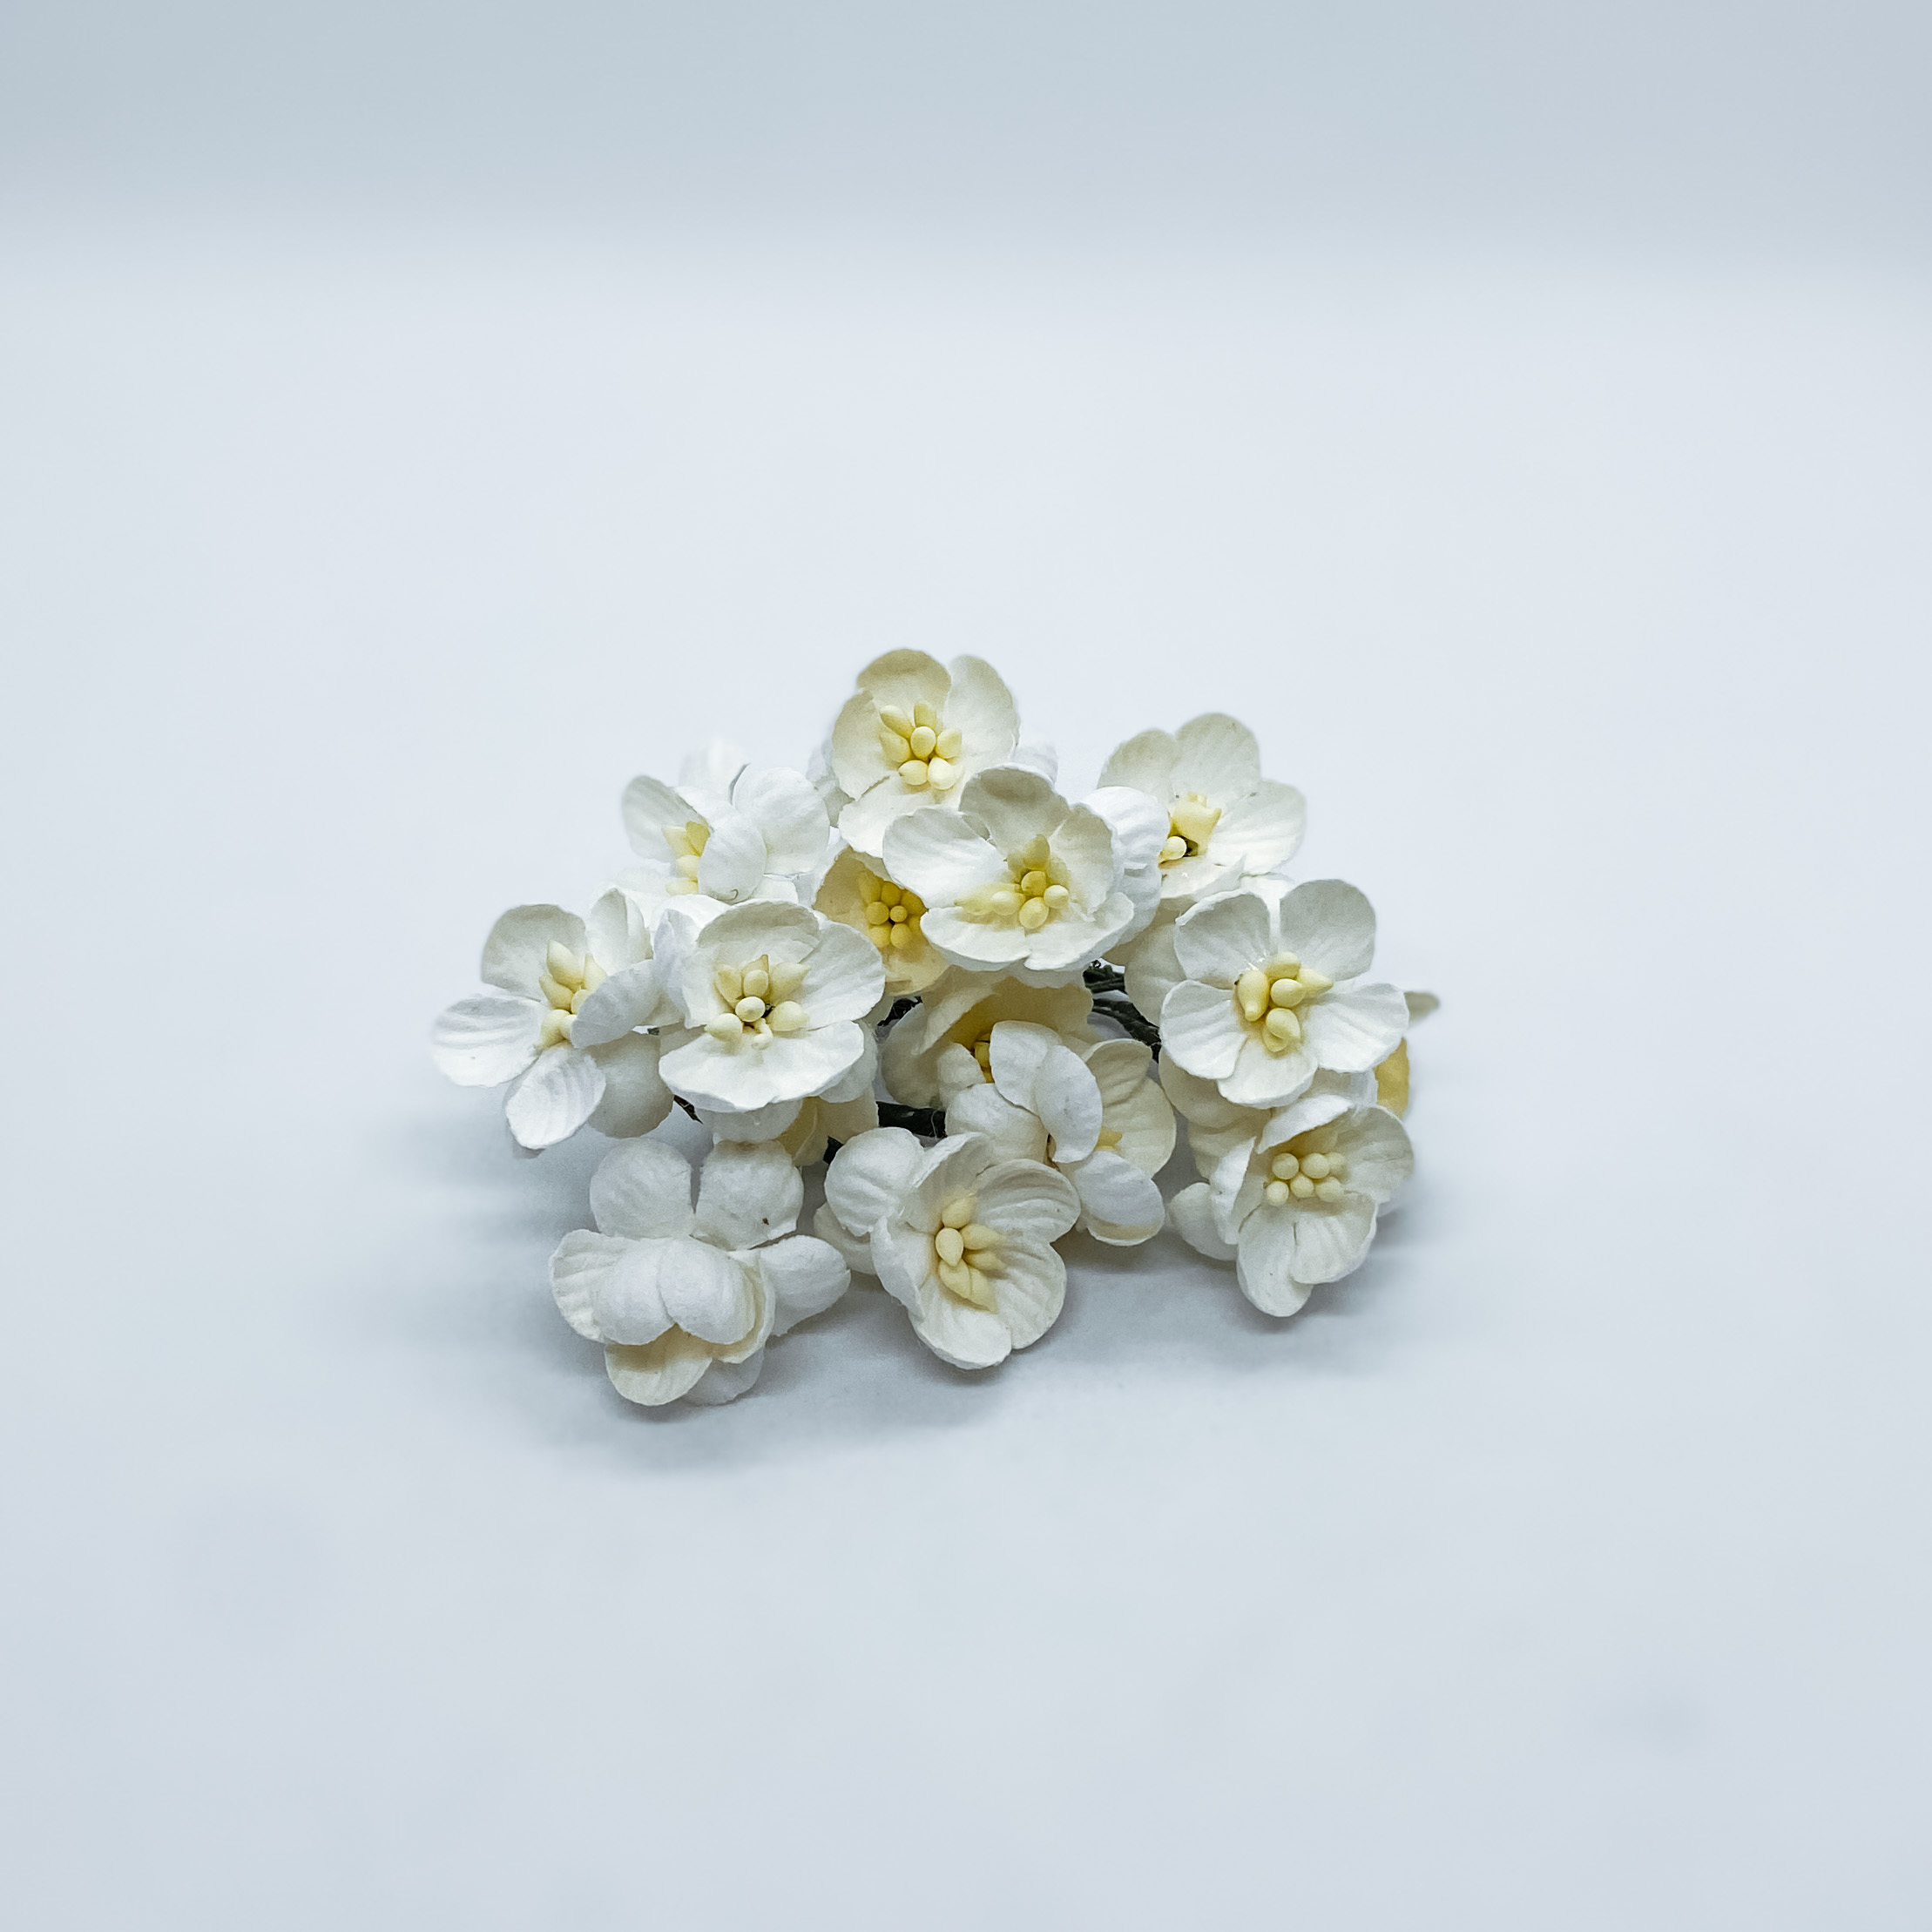 Набор  декоративных цветков вишни белого цвета 5 шт.